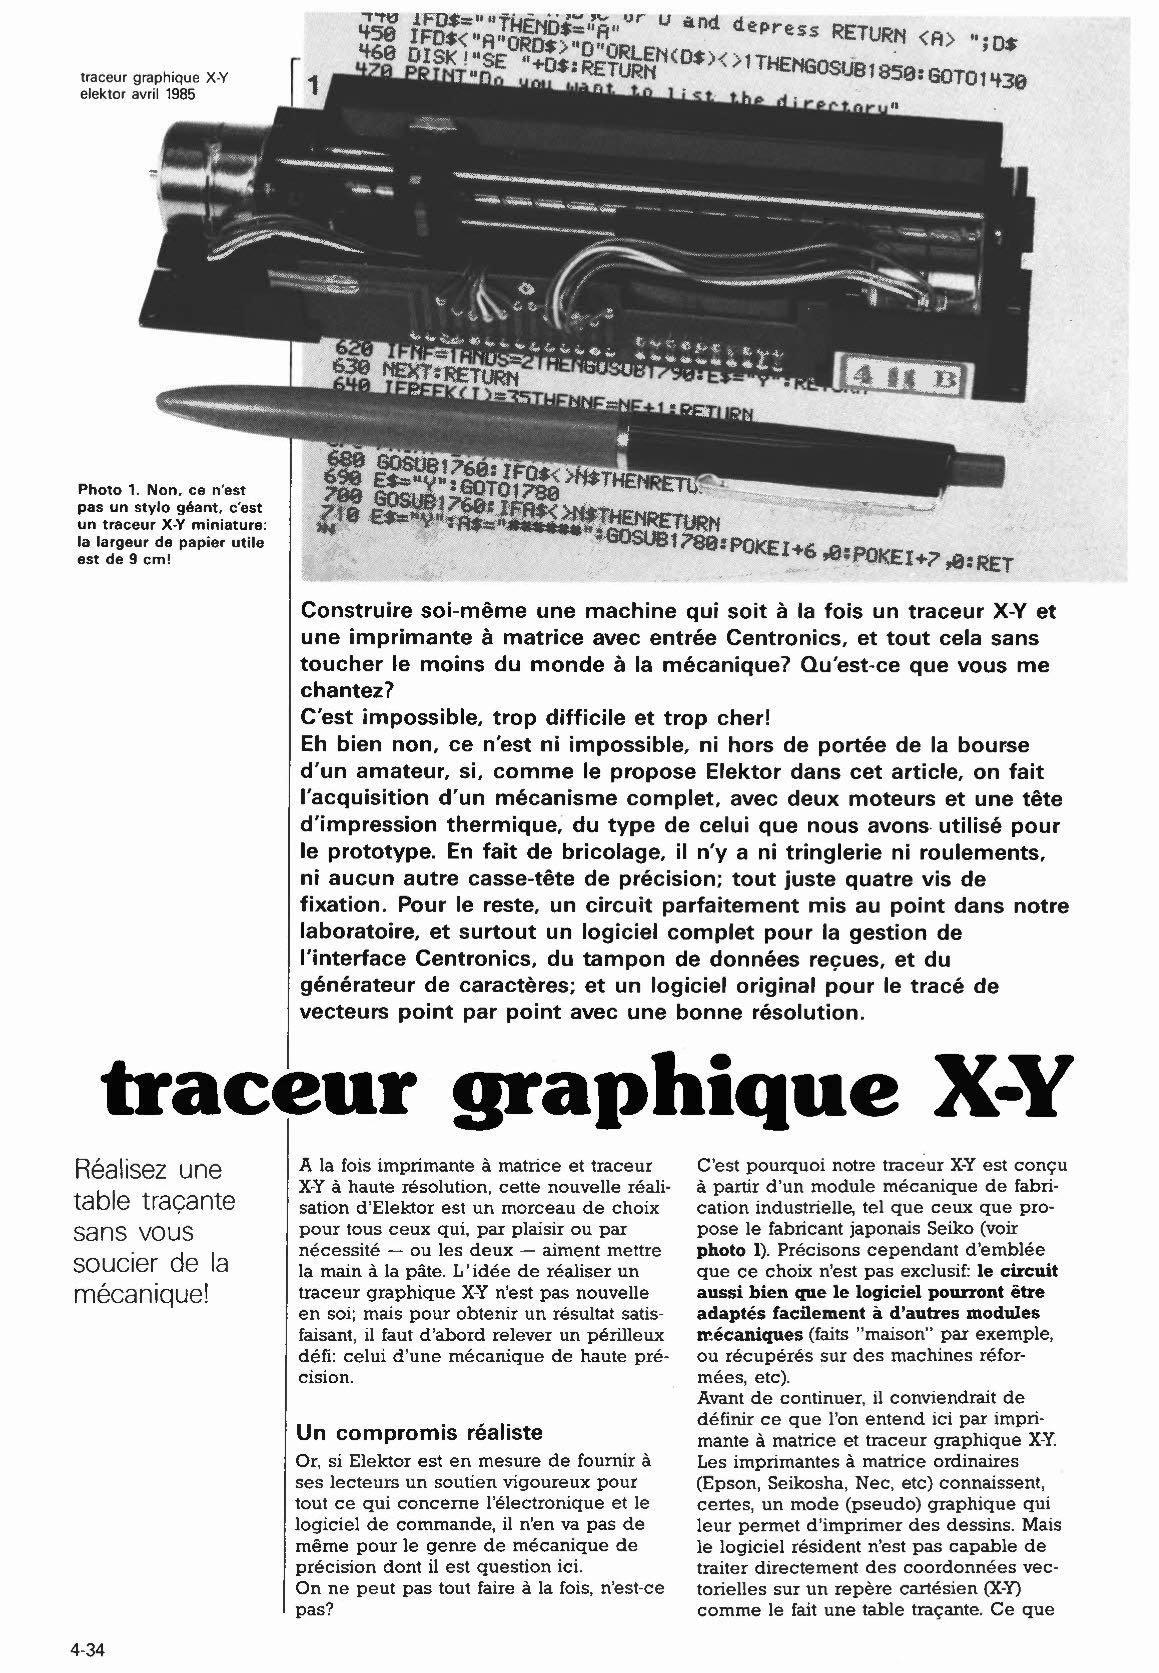 traceur graphique X-Y